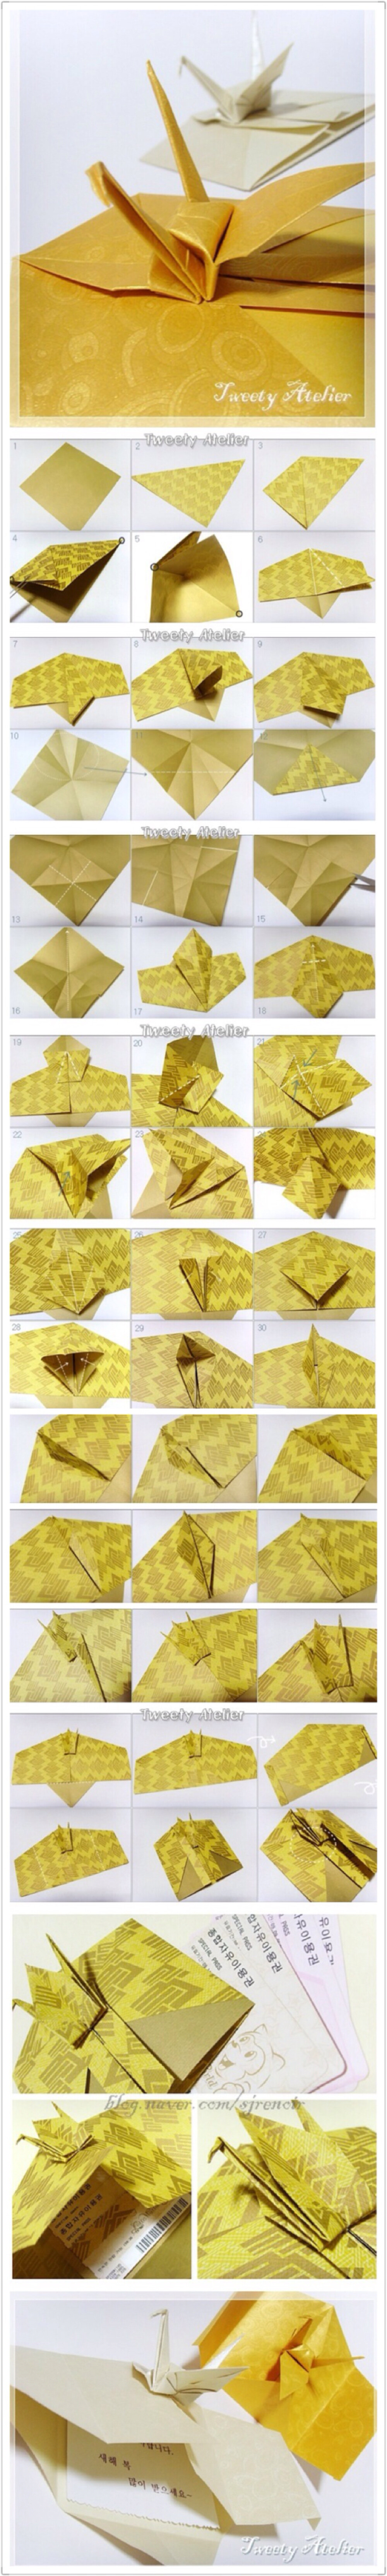 【折纸手工】可以放信纸、卡片、礼券的千纸鹤折纸图解